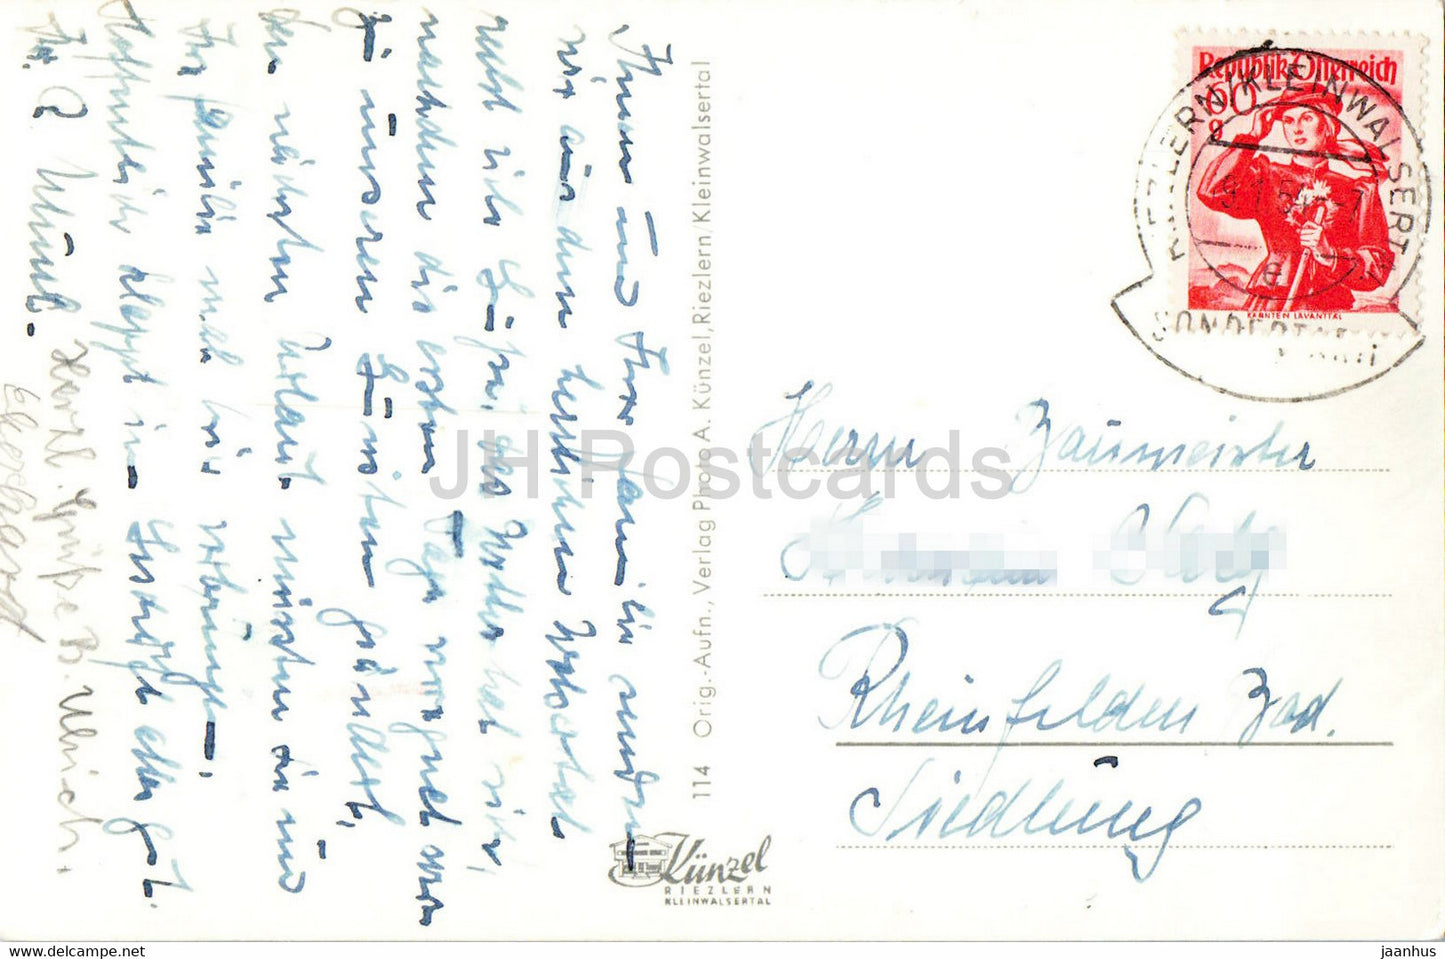 Riezlern - Kleinwalsertal - Heuberg - Schwarzwassertal - Hochifen - old postcard - 1954 - Austria - used